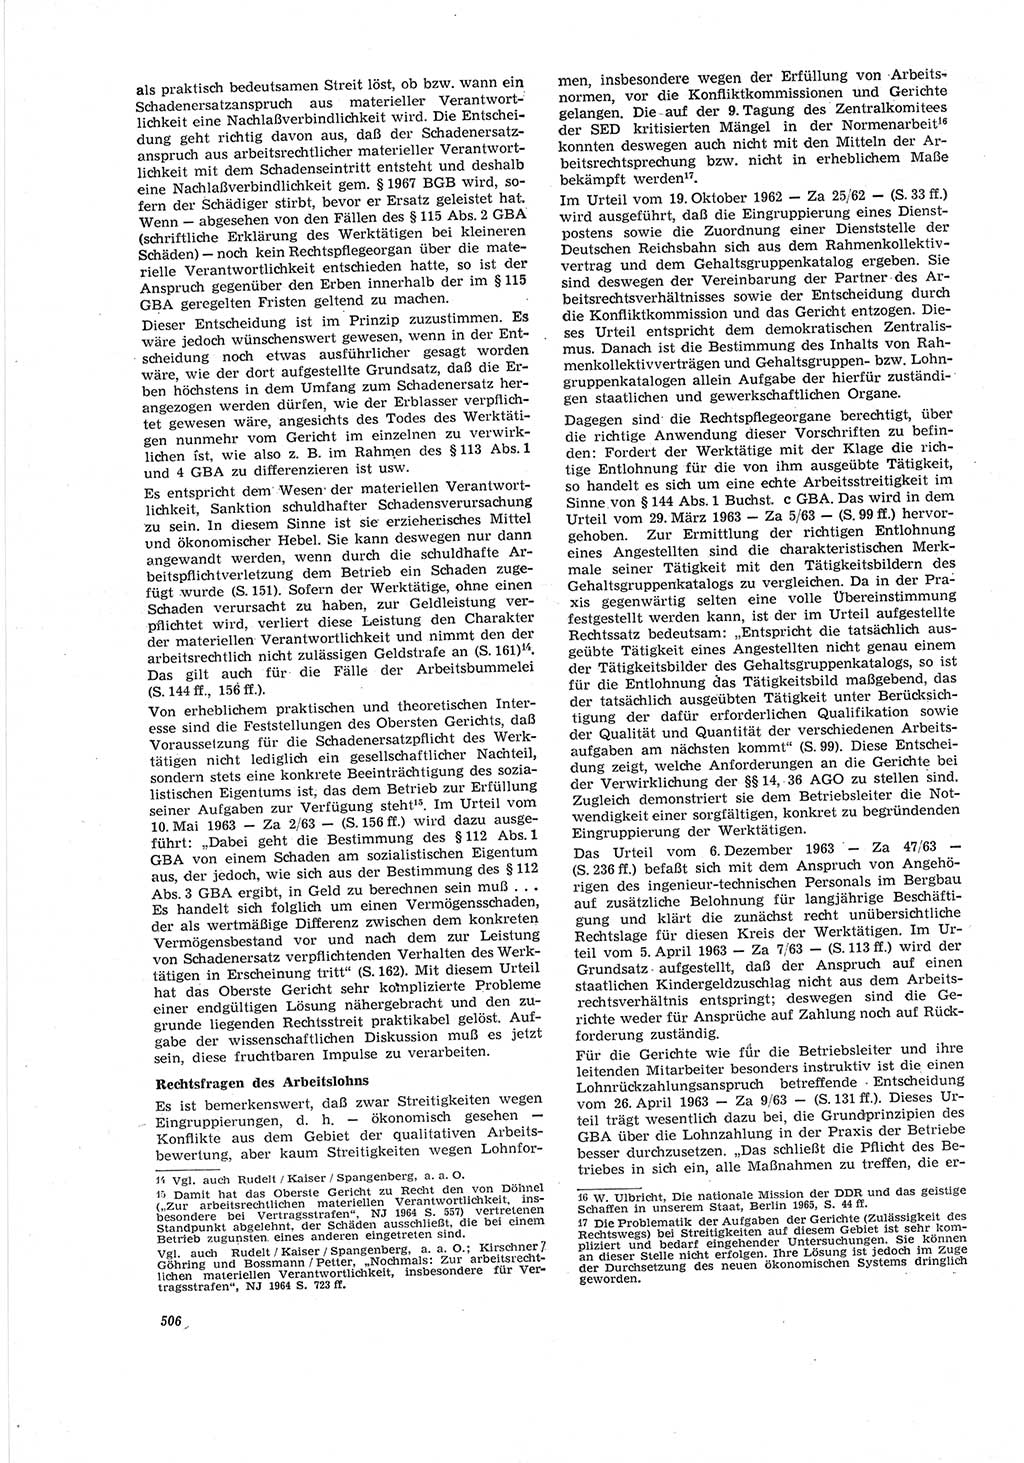 Neue Justiz (NJ), Zeitschrift für Recht und Rechtswissenschaft [Deutsche Demokratische Republik (DDR)], 19. Jahrgang 1965, Seite 506 (NJ DDR 1965, S. 506)